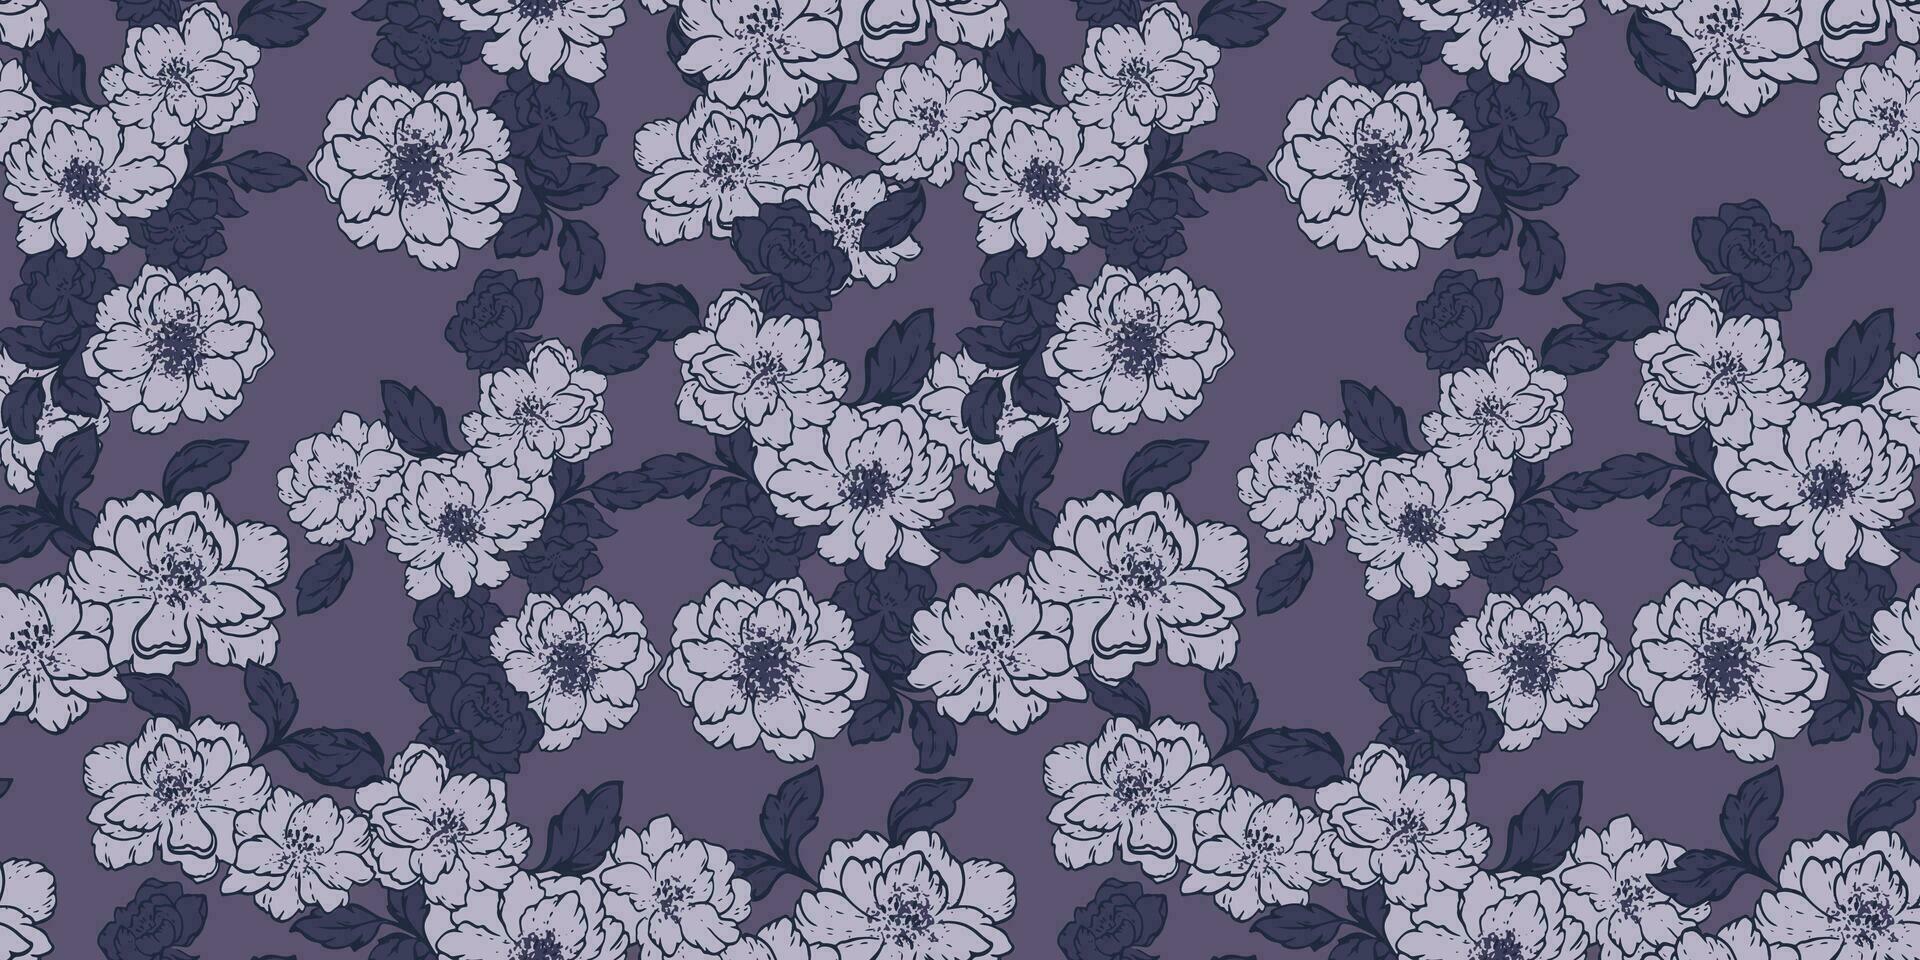 kreativ einfach grau Blumen und Blätter nahtlos Muster. Blühen abstrakt Blumen- drucken auf ein dunkel Hintergrund. Vektor Hand gezeichnet. Vorlage zum Design